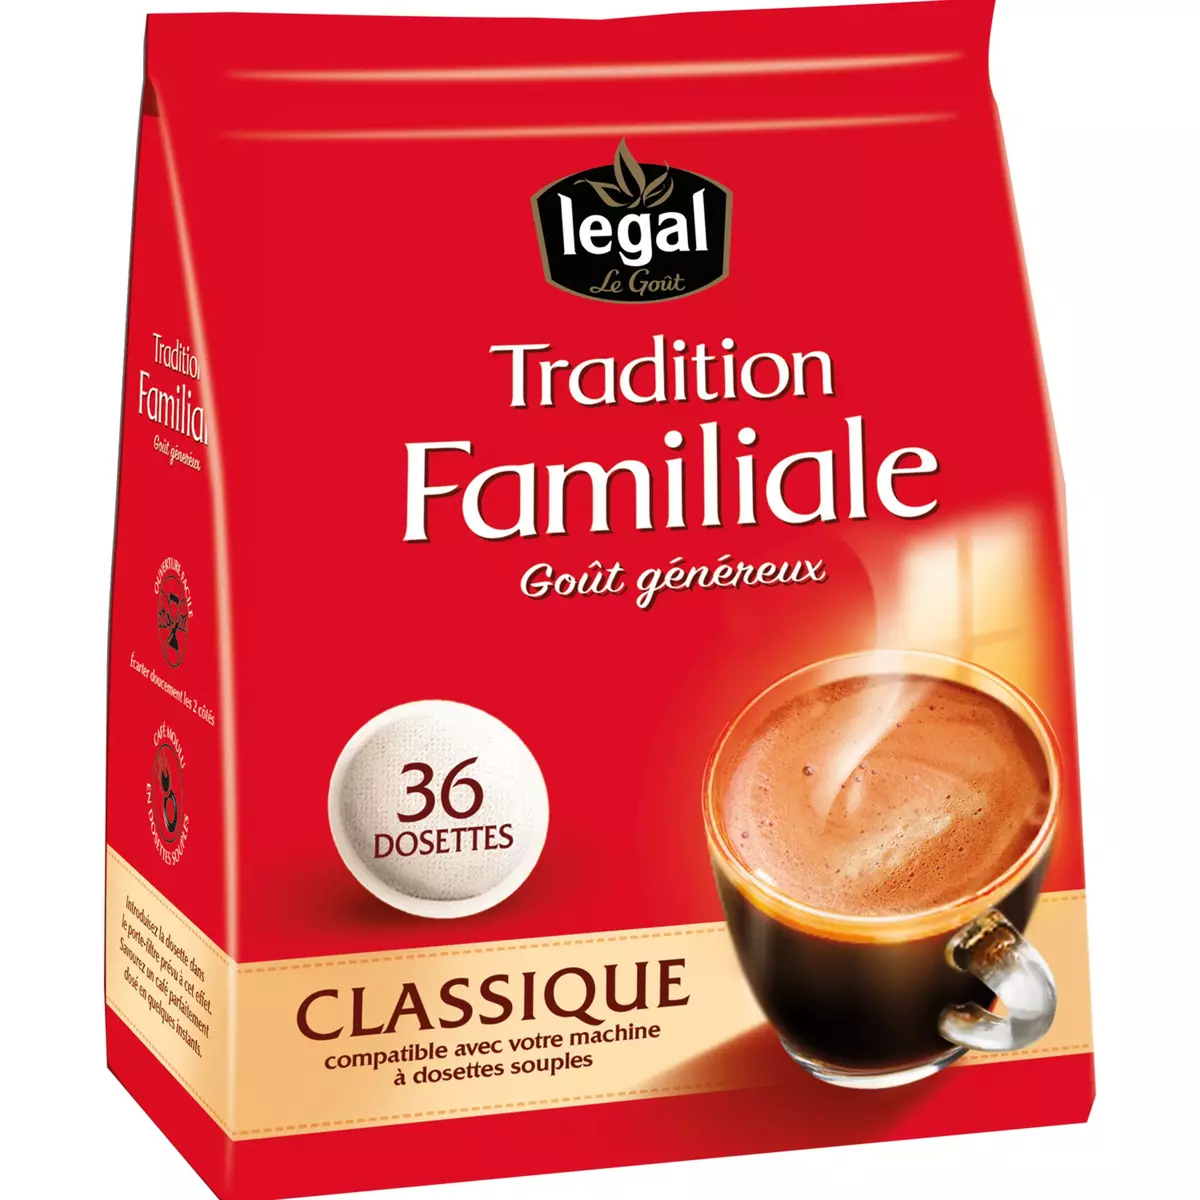 LEGAL Dosettes de café tradition familiale classique compatibles Senseo 36 dosettes 250g